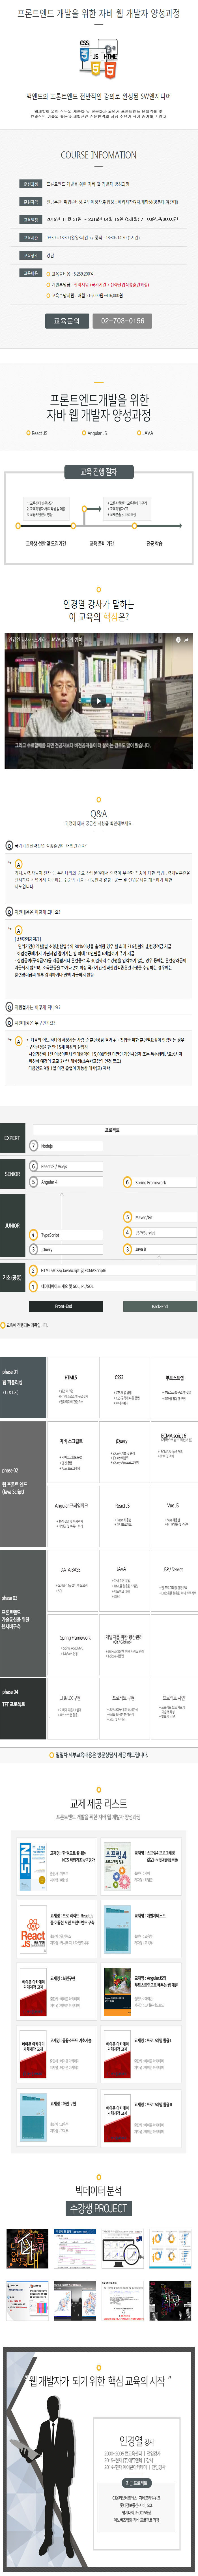 프론트엔드 개발을 위한 자바 웹 개발자 양성과정(강남.11월 21일~5개월).jpg